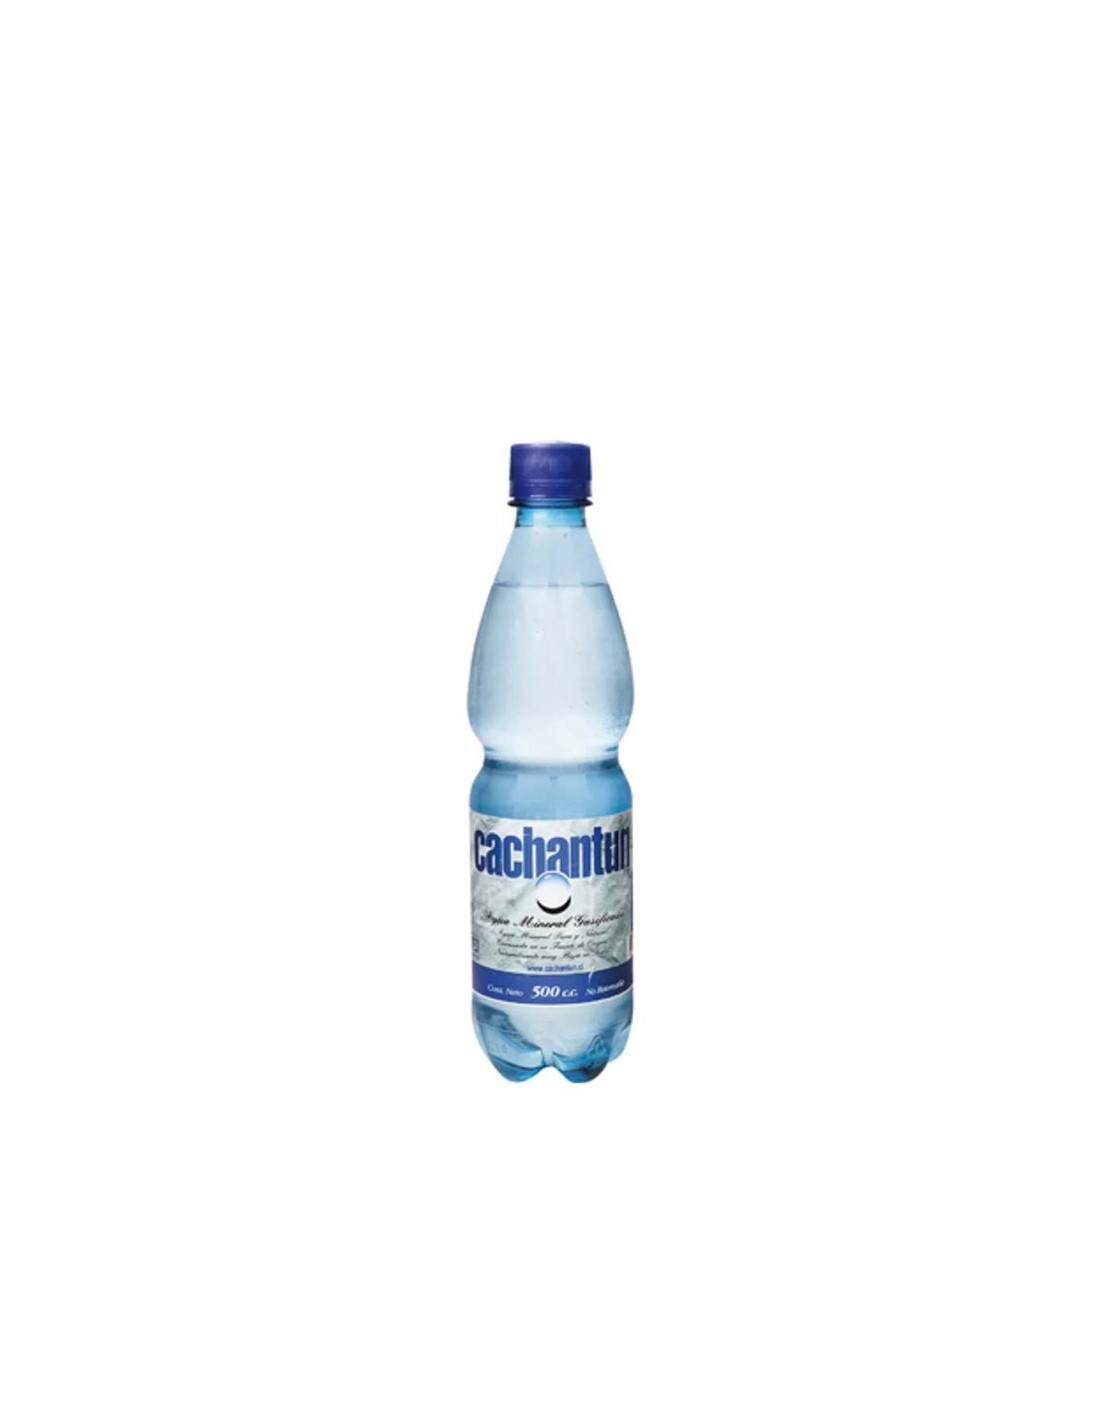 Agua mineral con gas.